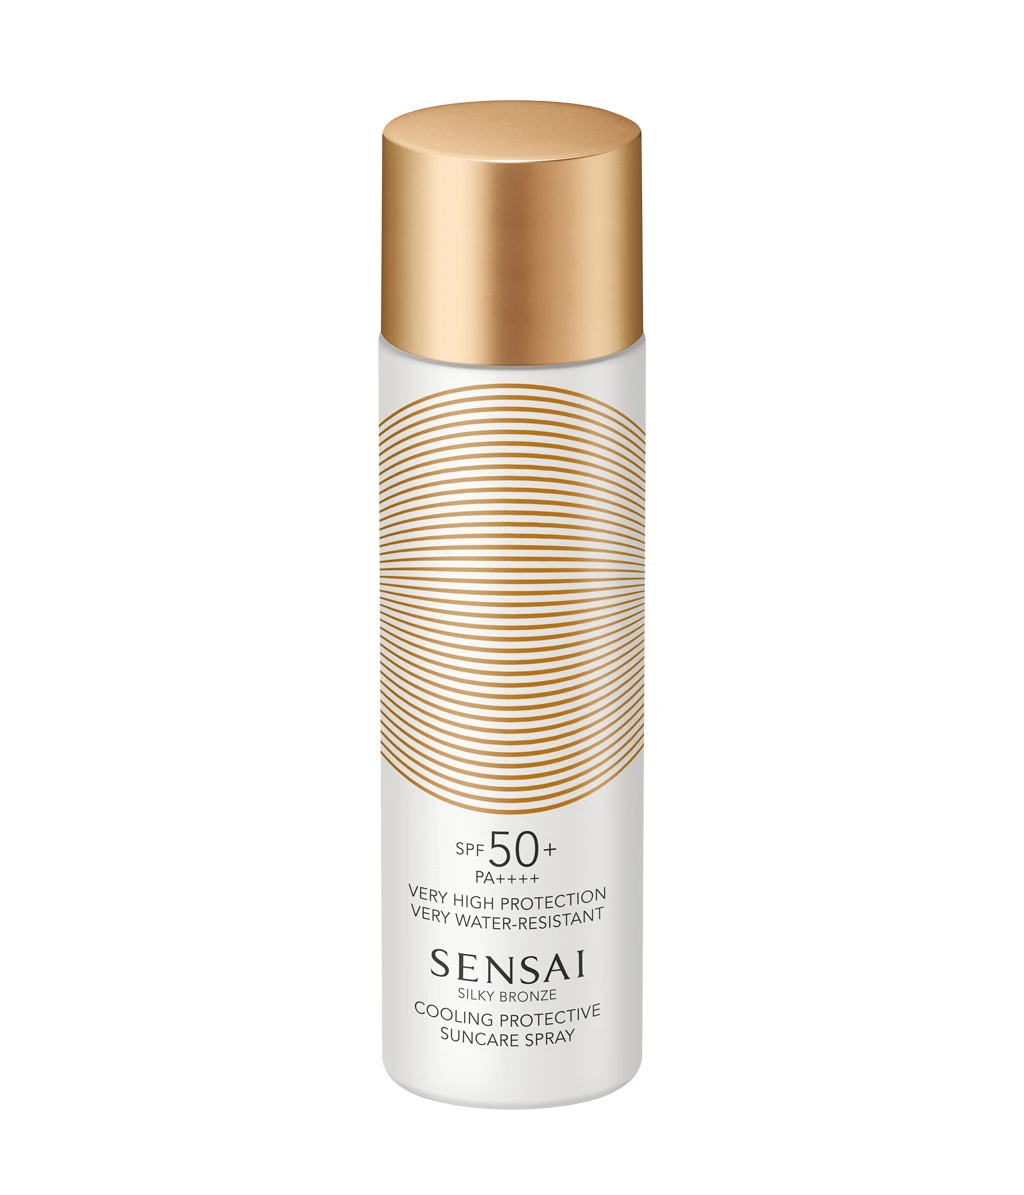 Sensai Ochranný osviežujúci sprej SPF 50 Silky Bronze (Cooling Protective Suncare Spray) 150 ml